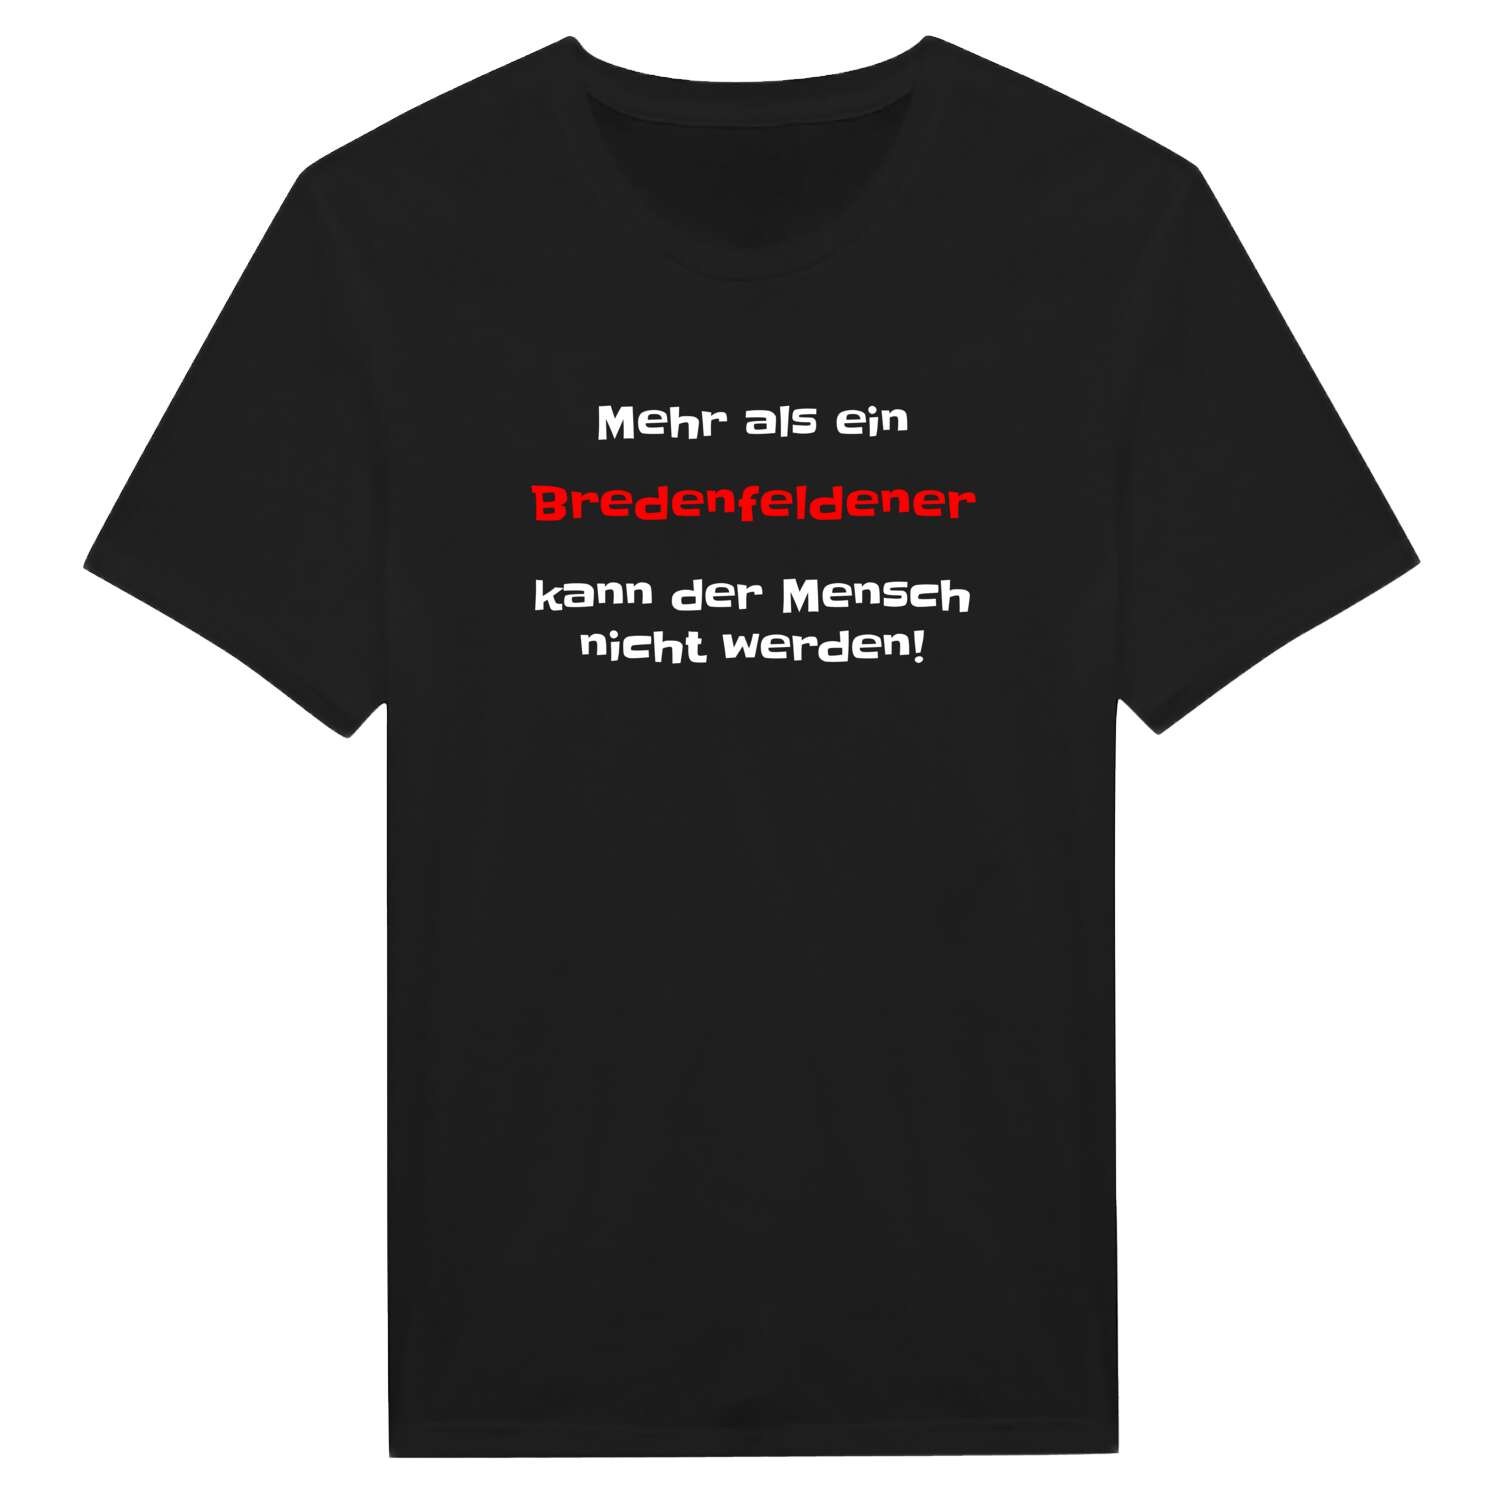 Bredenfelde T-Shirt »Mehr als ein«